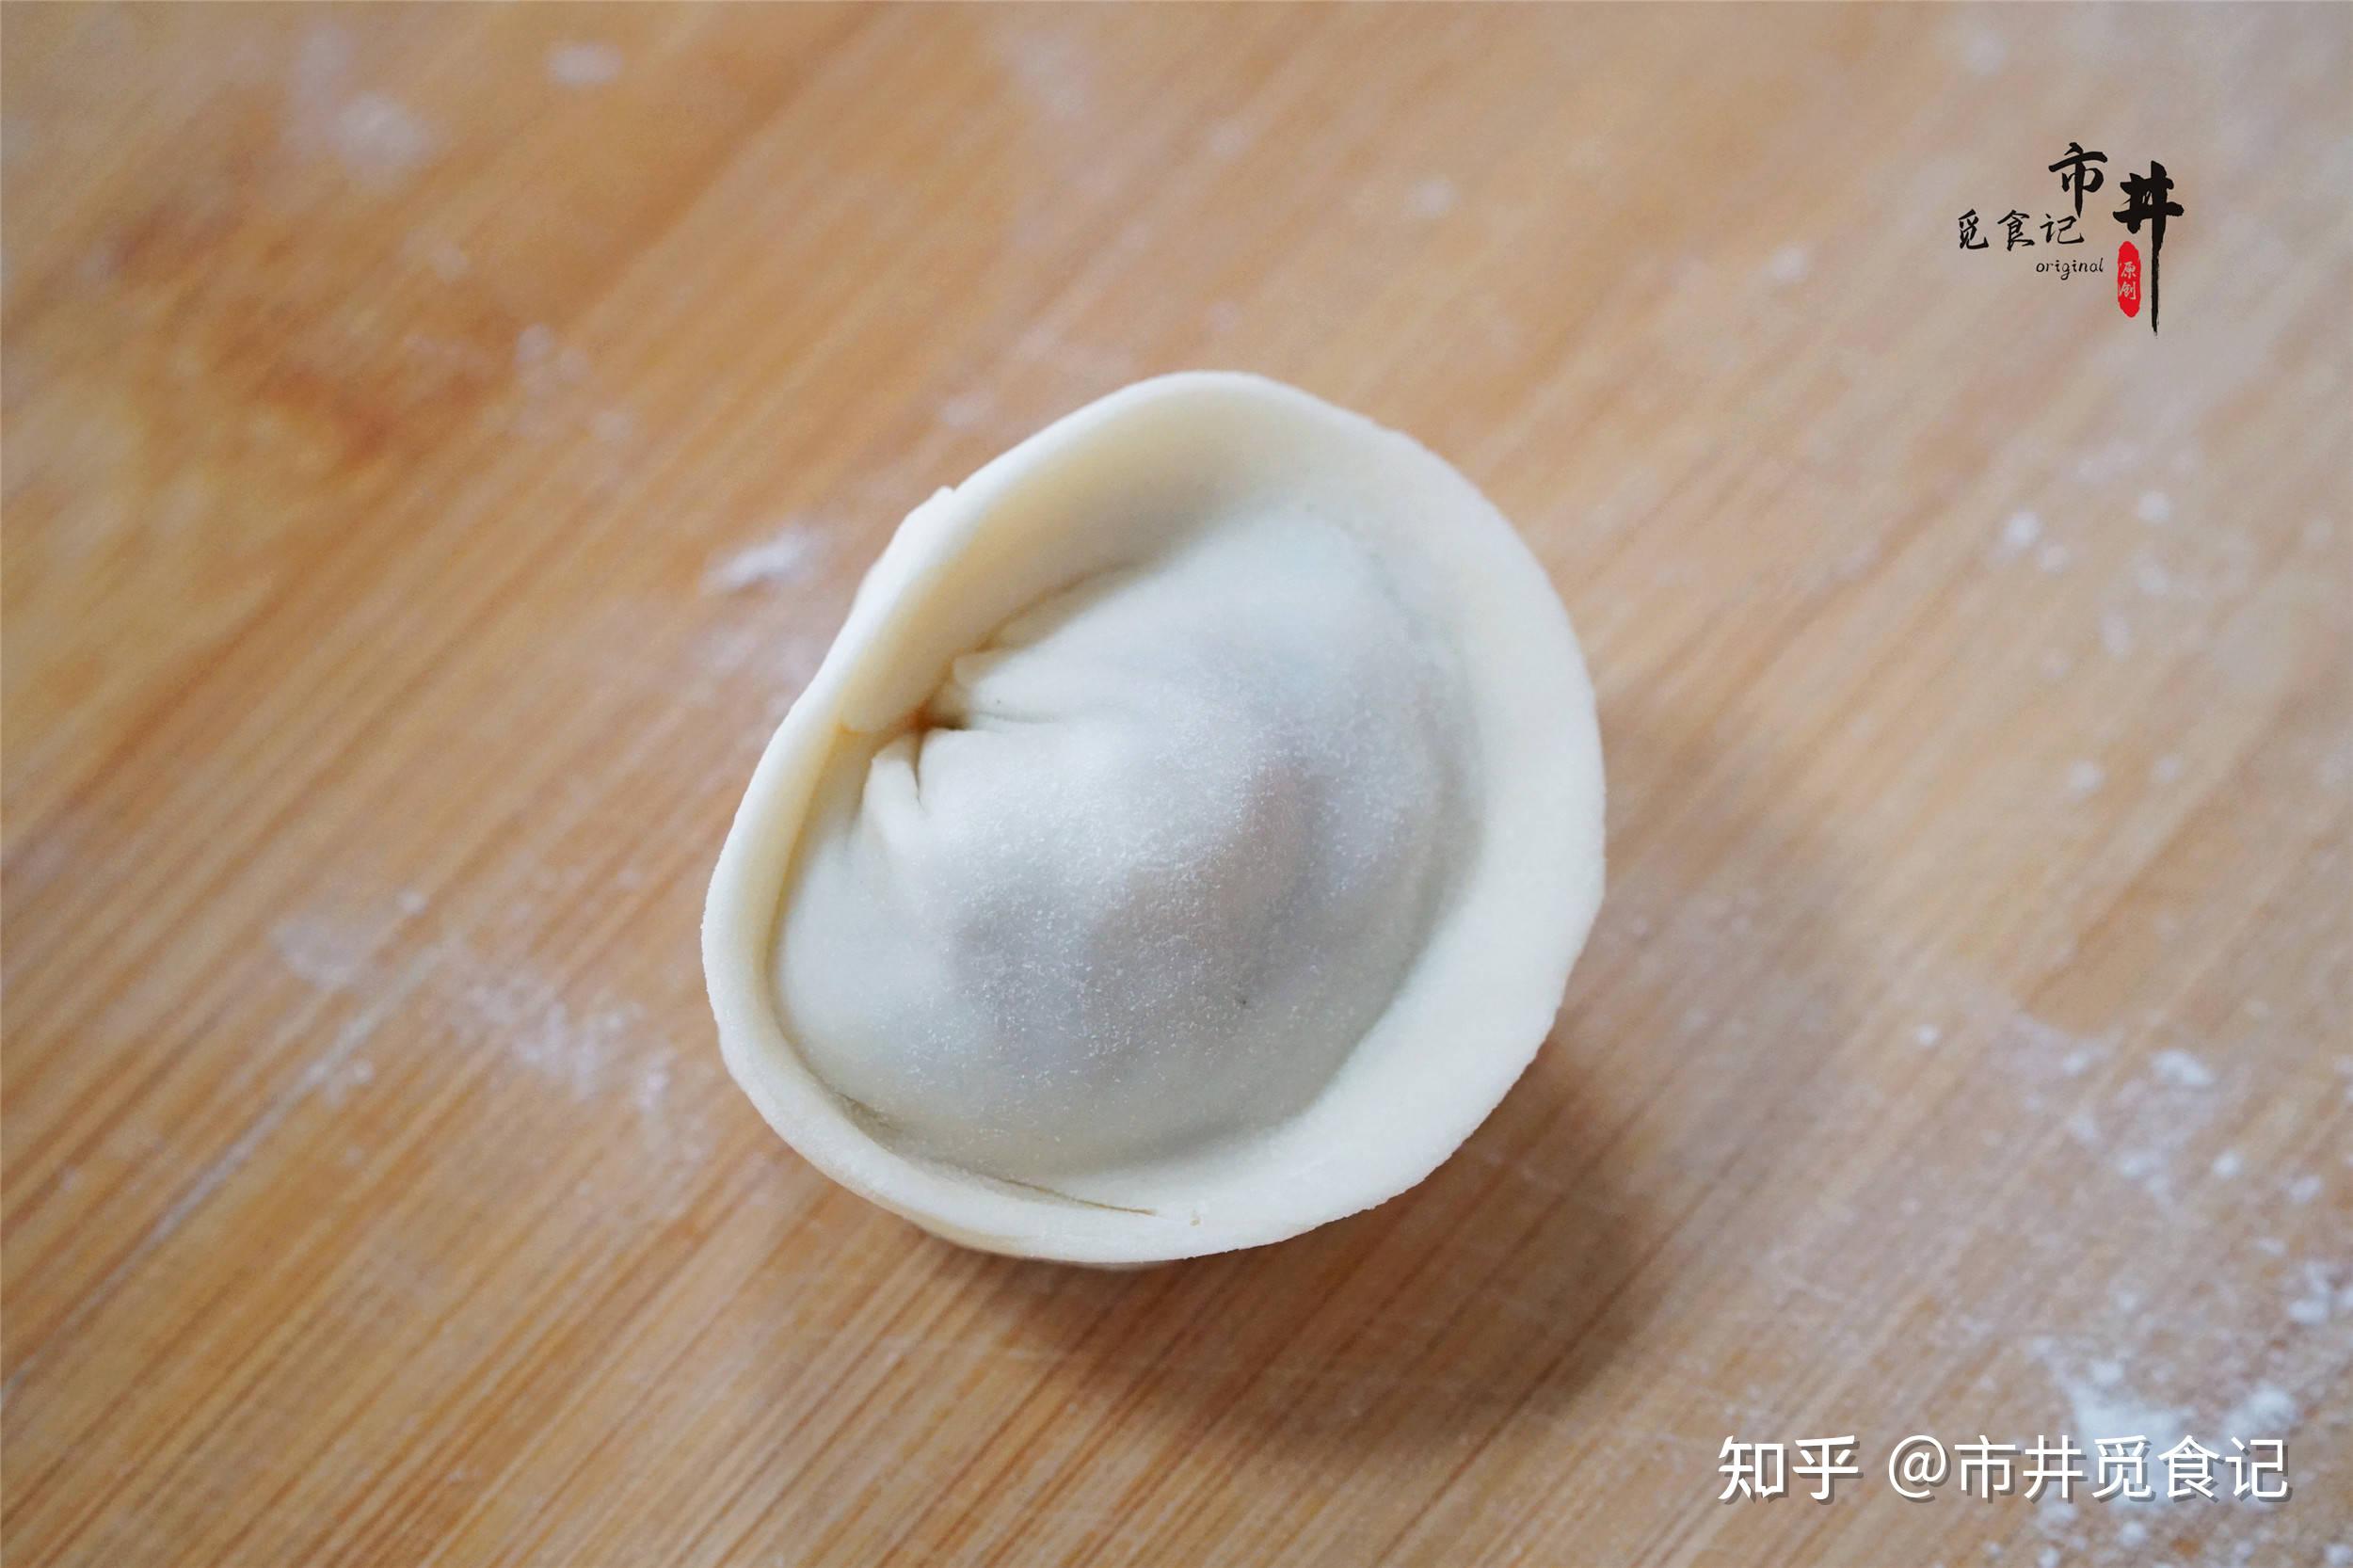 白菜饺子(金元宝)的做法_菜谱_豆果美食